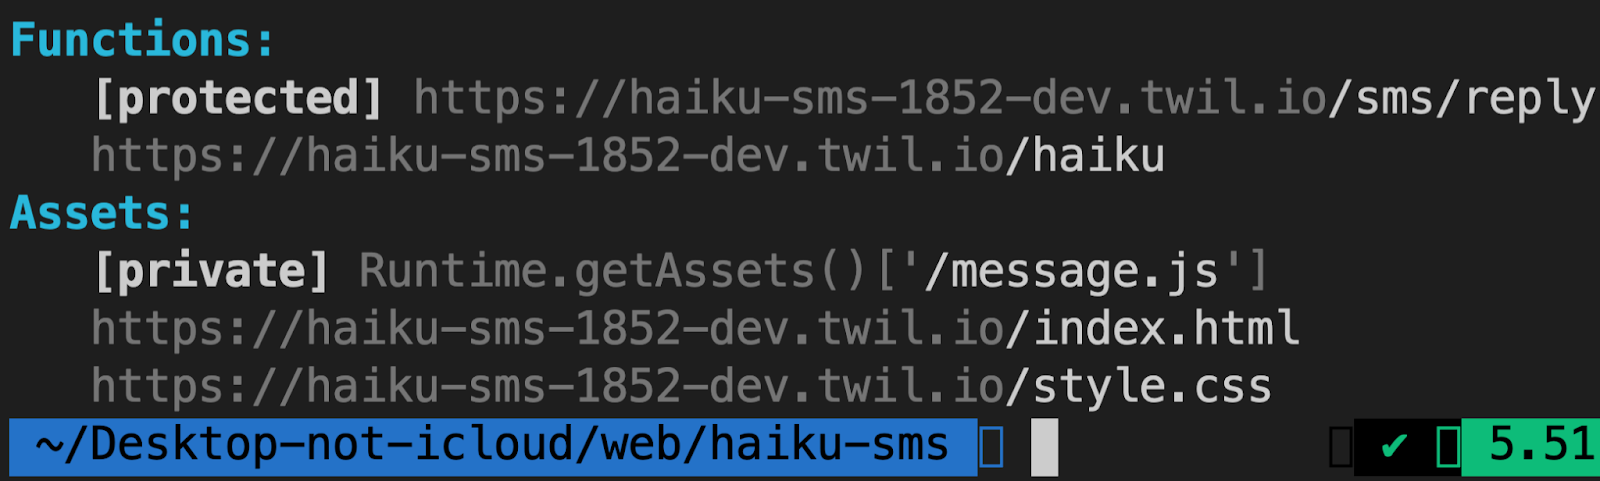 Function URLs in terminal